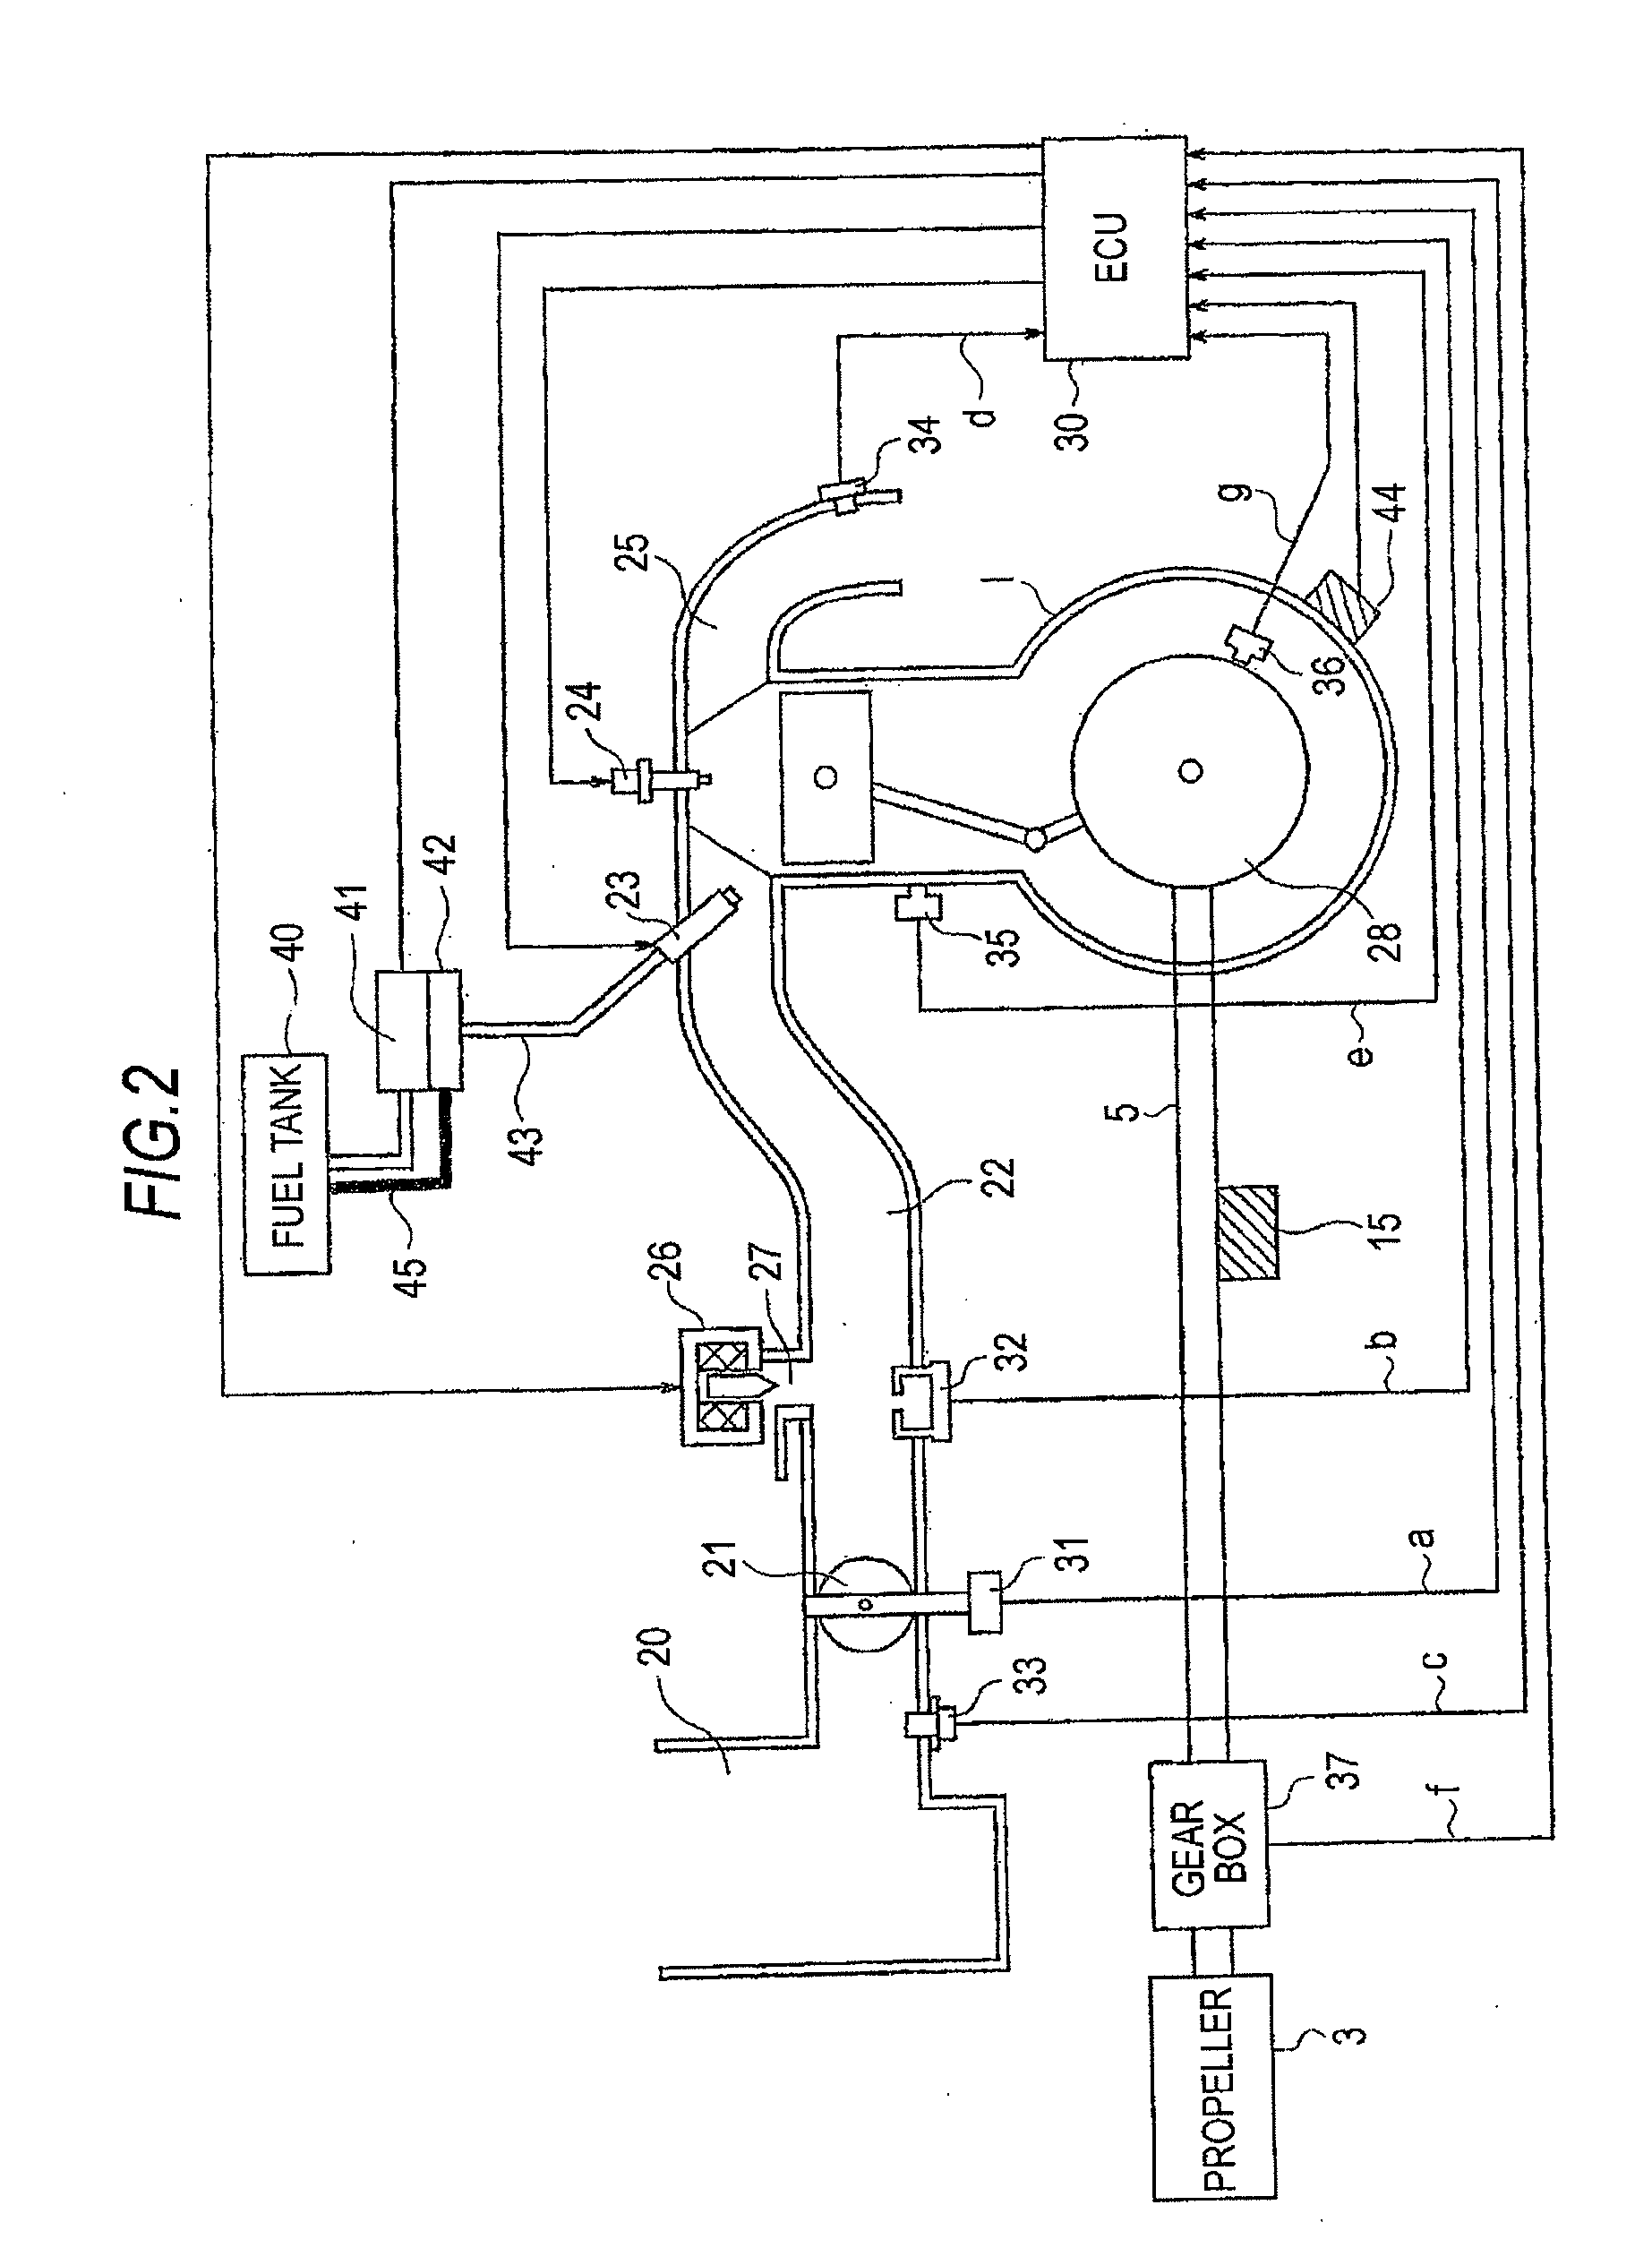 Fuel pump control apparatus of engine